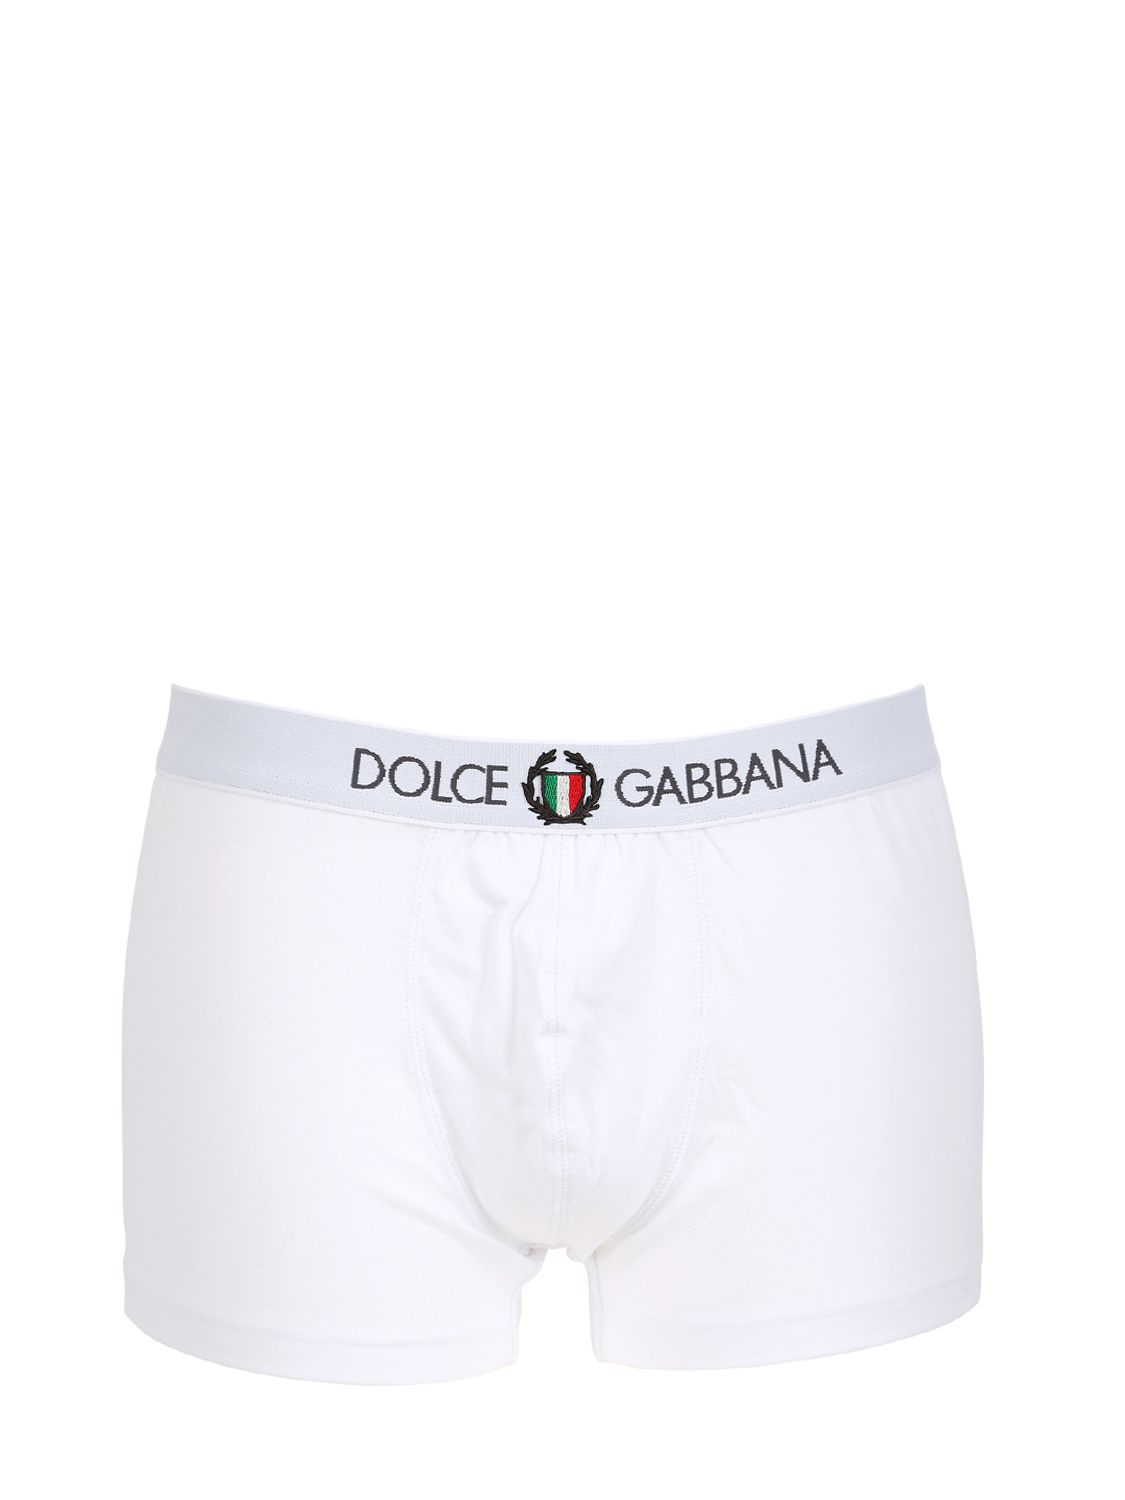 Lyst - Dolce & Gabbana Italian Crest On Cotton Boxer Briefs in White ...